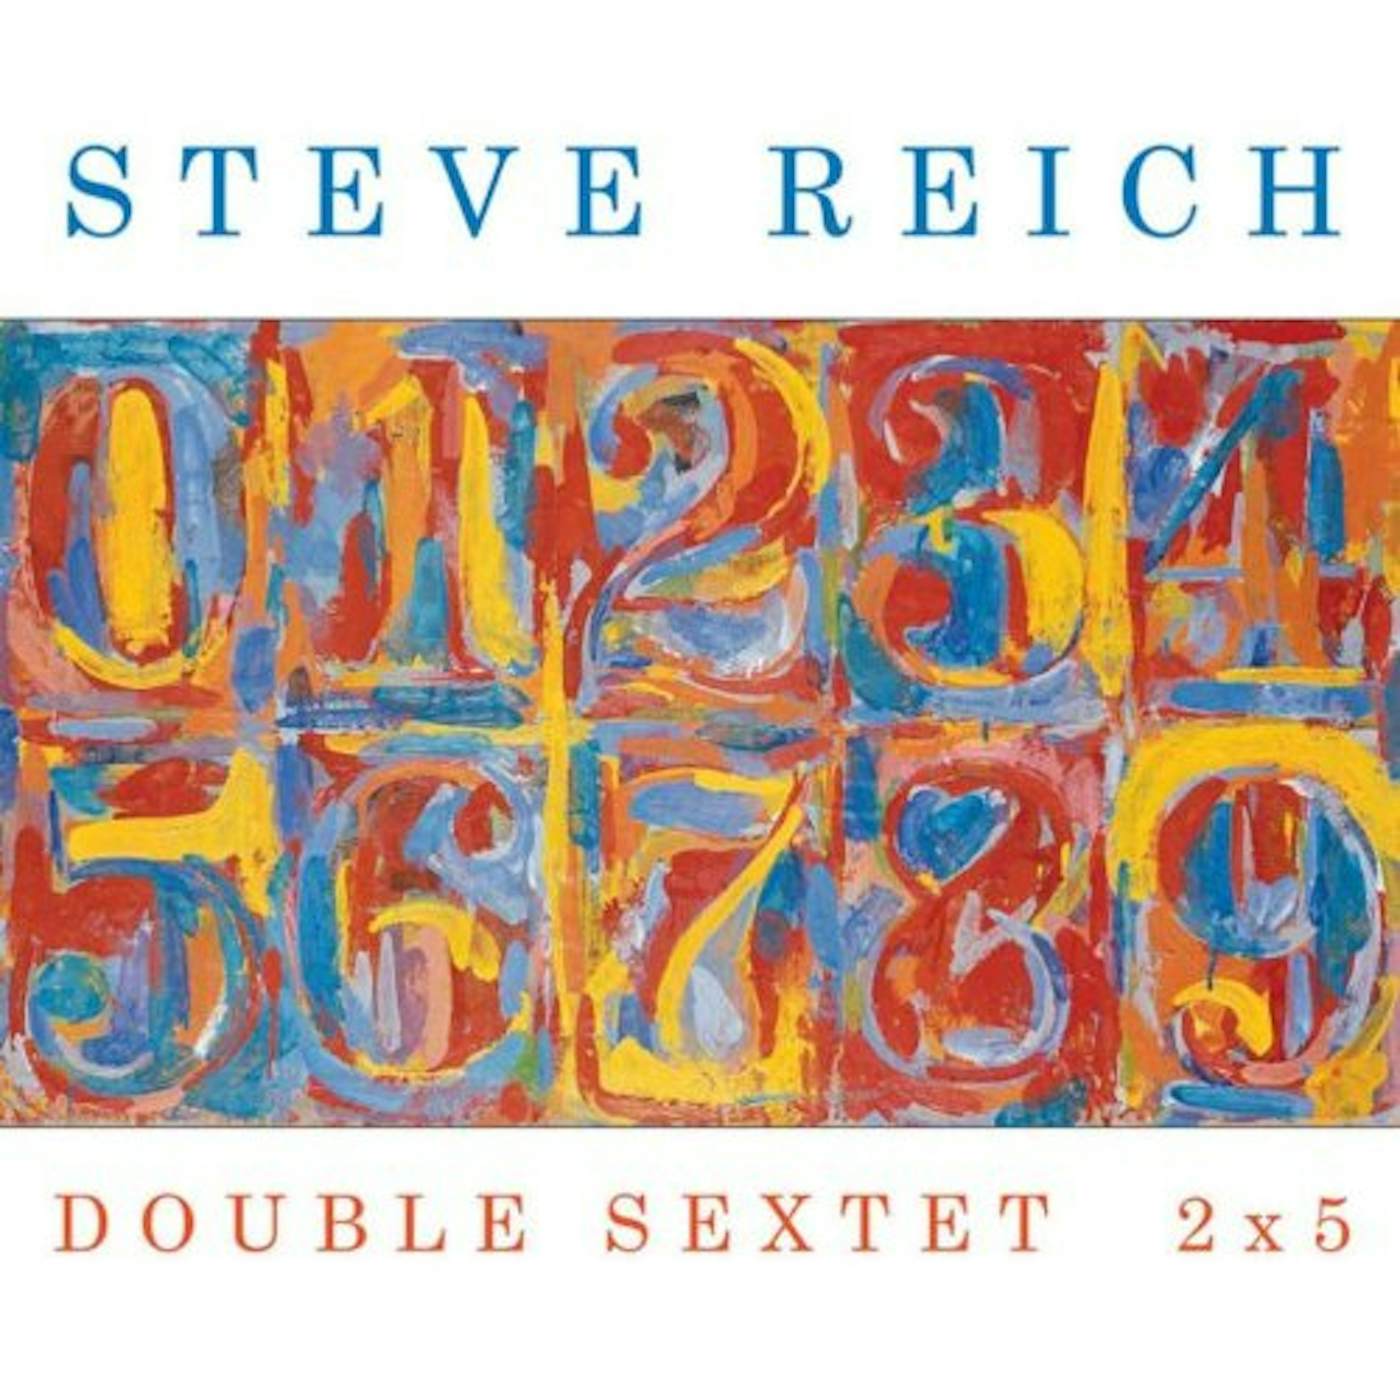 Steve Reich DOUBLE SEXTET / 2X5 CD